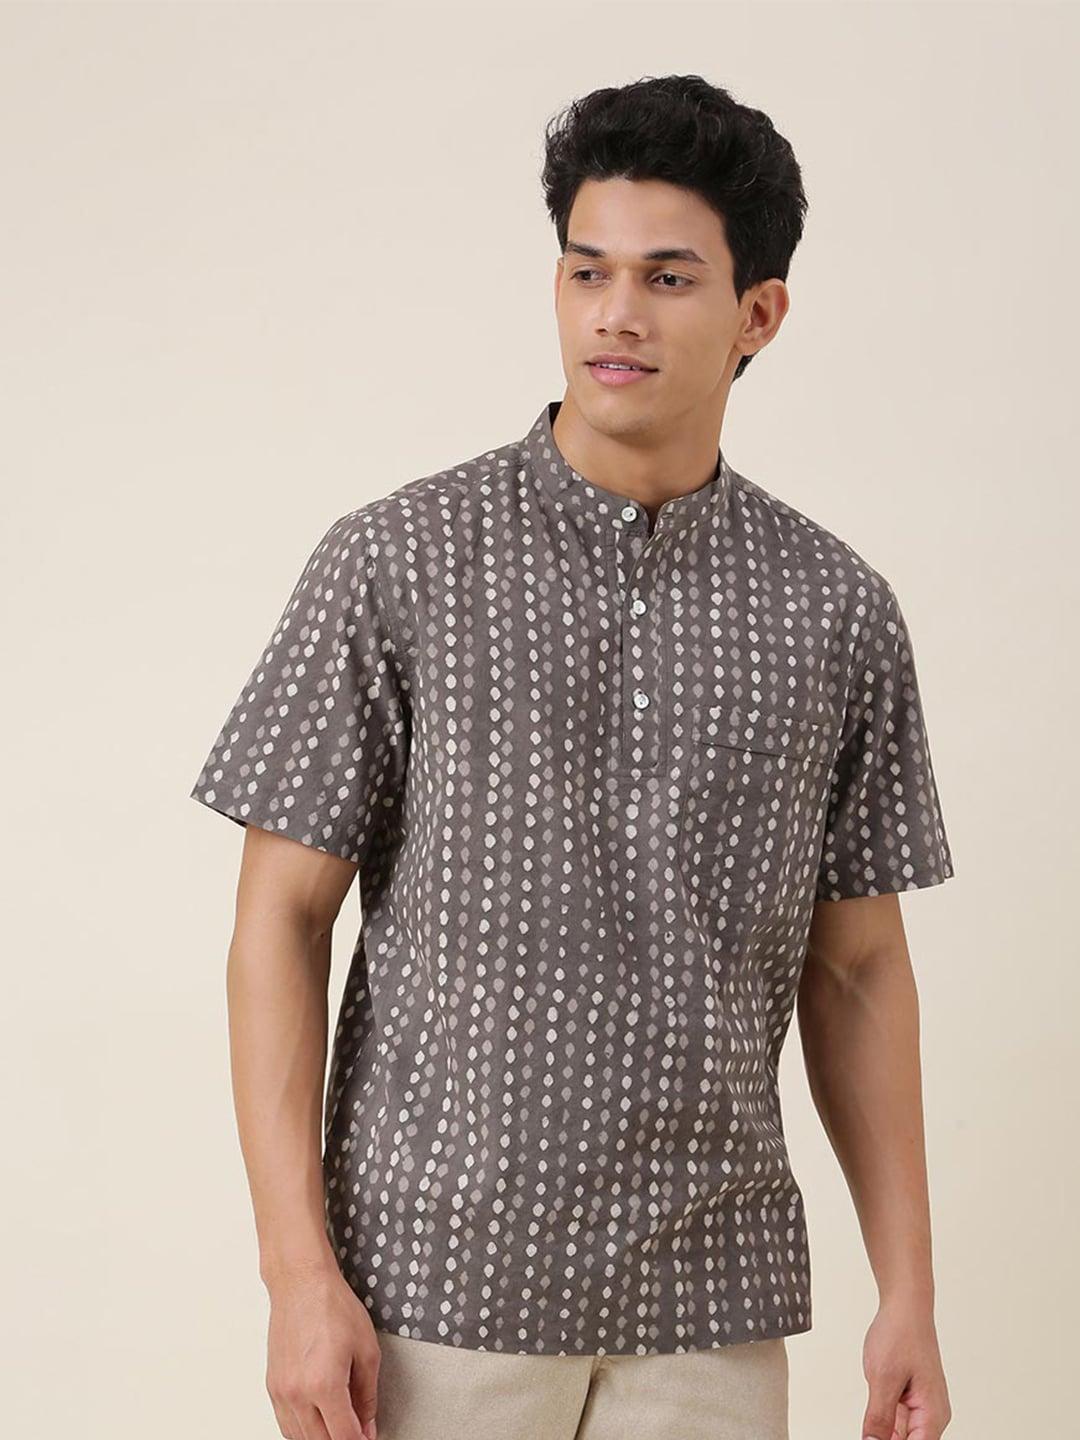 fabindia-men-comfort-printed-casual-shirt